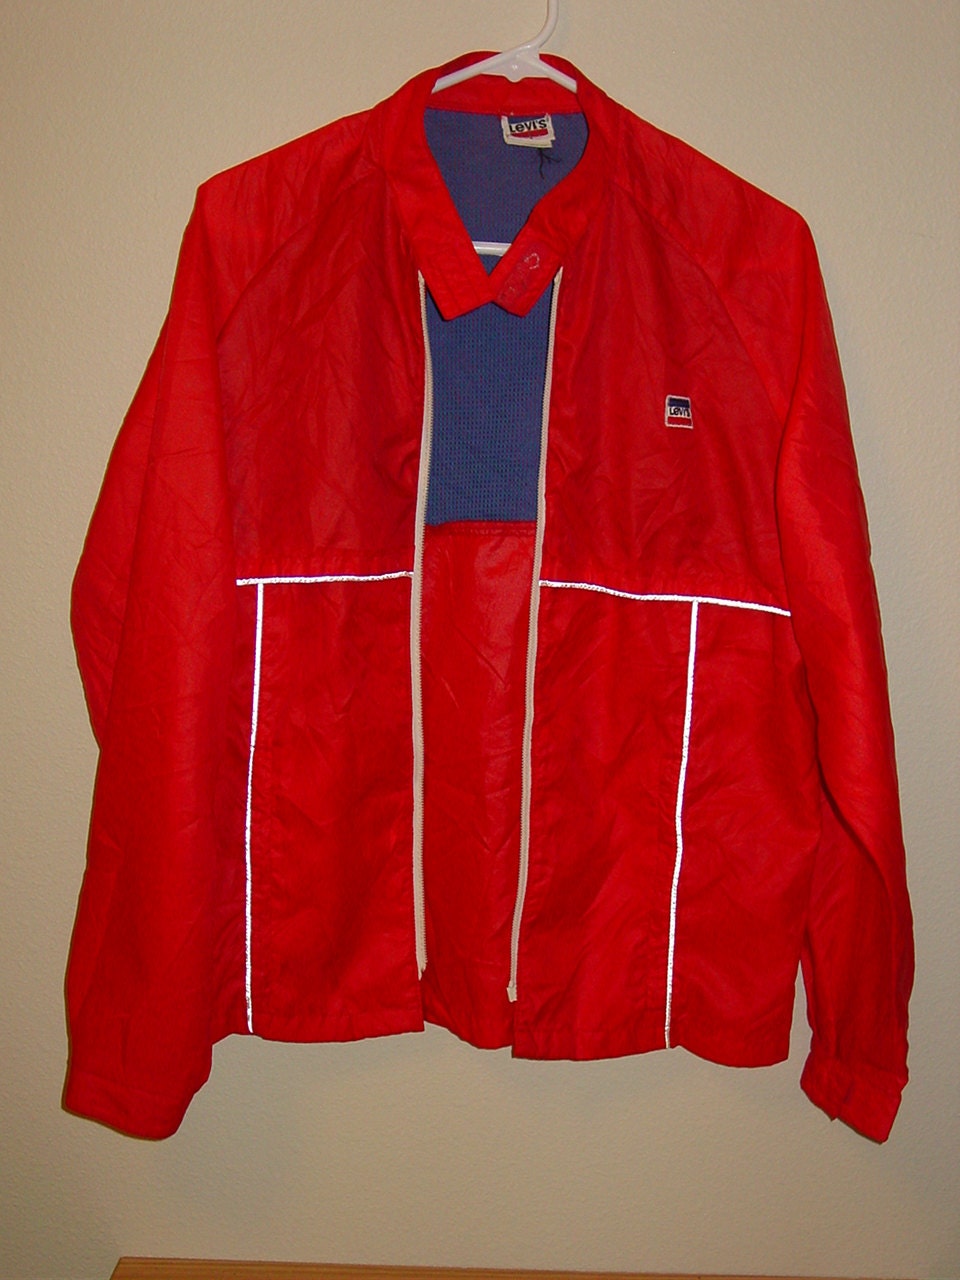 vintage 1984 Levis USA Olympics jacket Broken Zipper